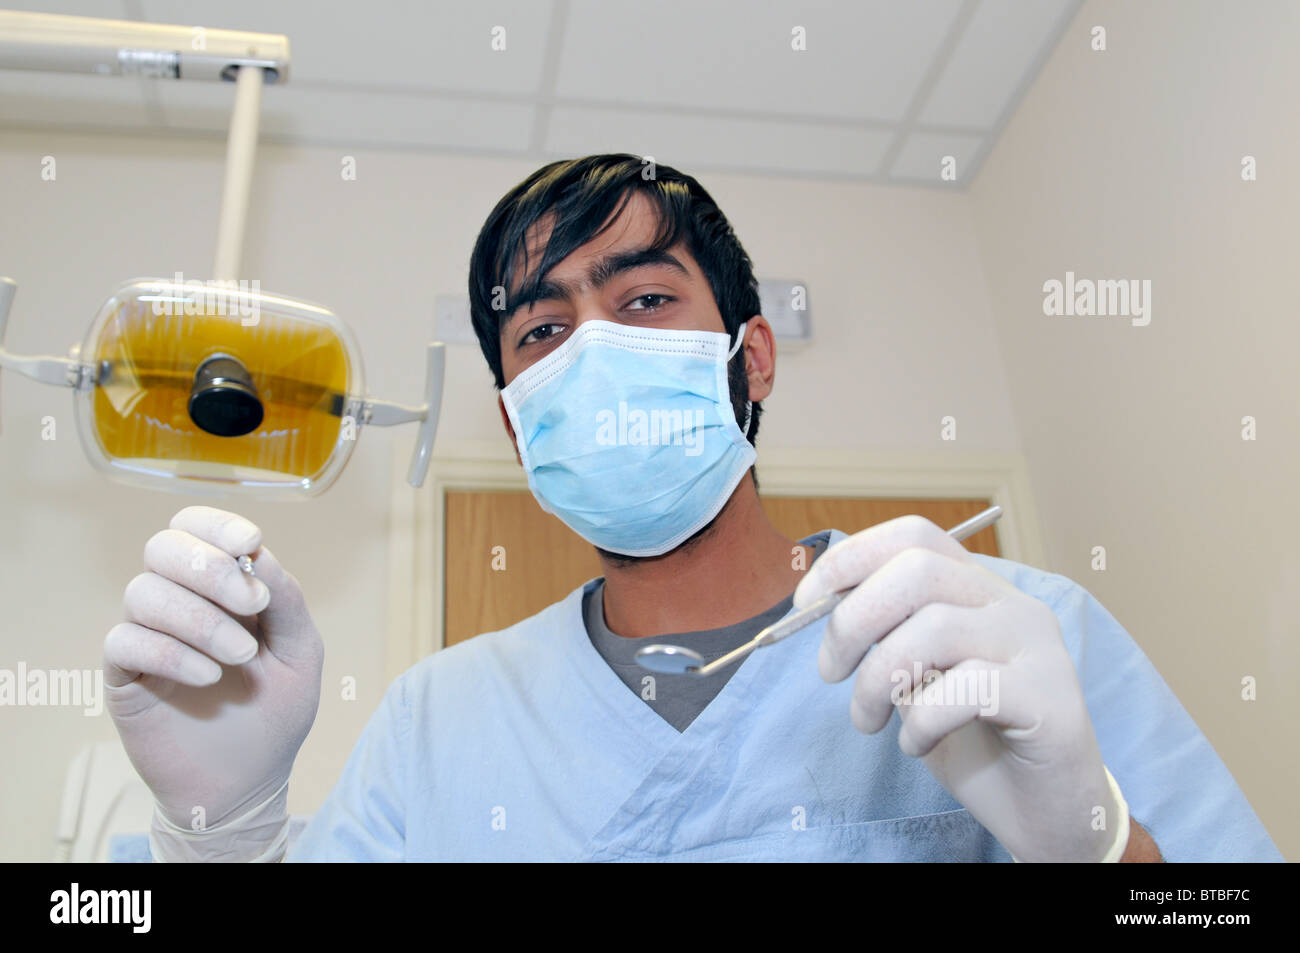 Un homme sur le point de commencer un dentiste dentiste jusqu'au point de vue d'un patient Banque D'Images